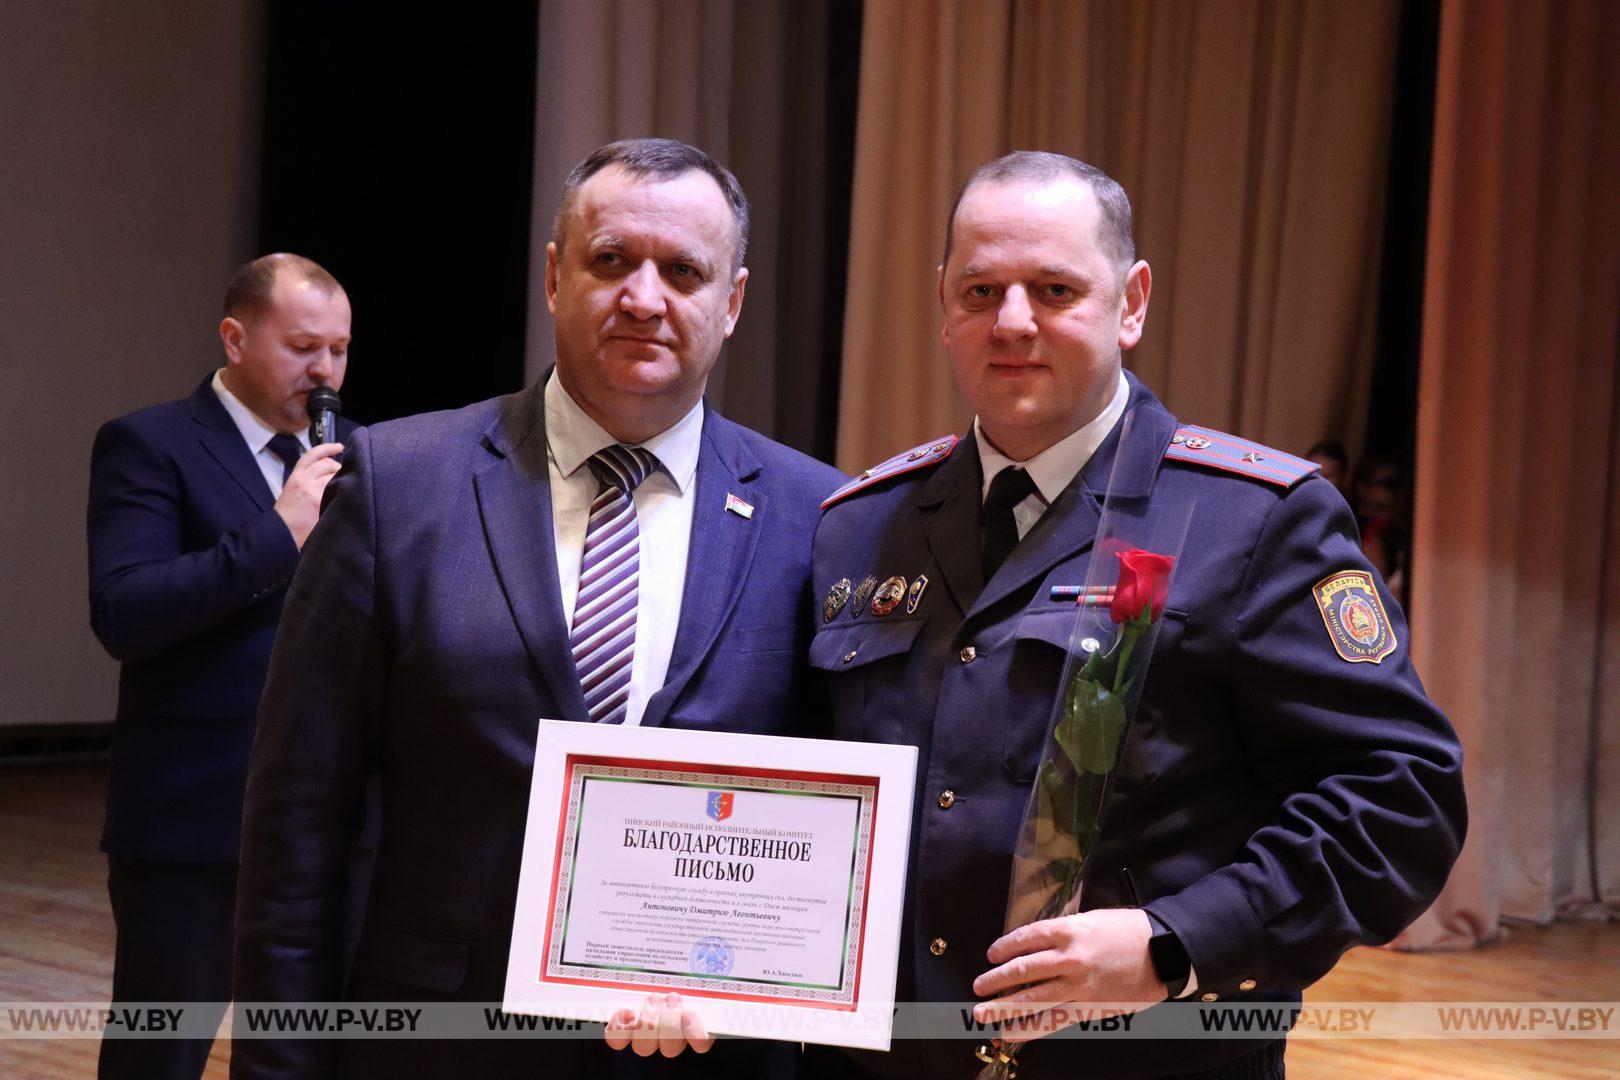 «Служим Закону, народу, Отчизне!»: состоялся праздничный концерт ко Дню белорусской милиции